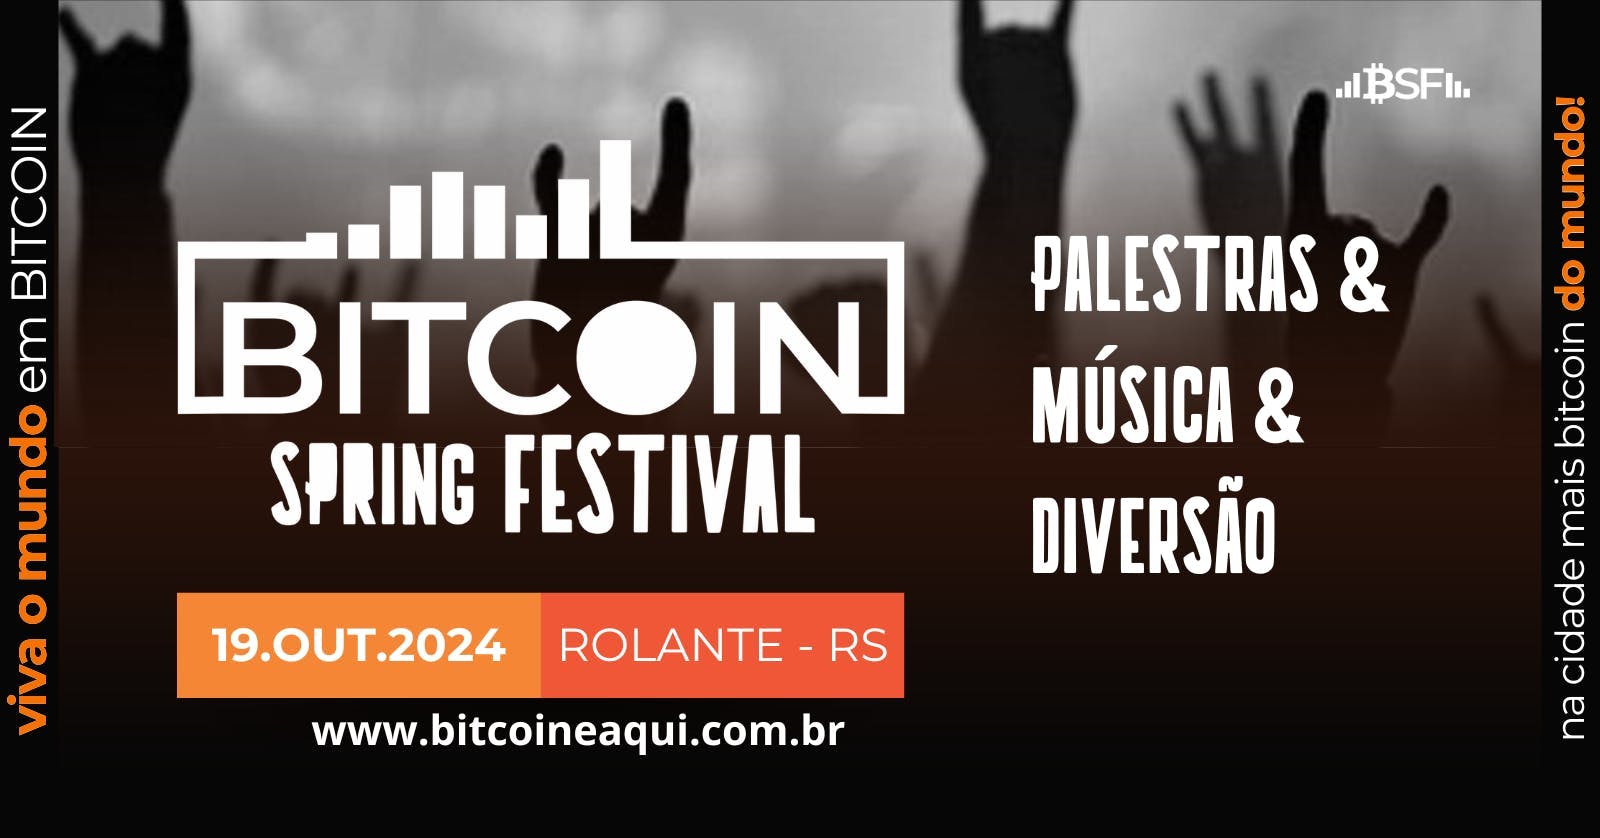 Bitcoin Spring Festival 2024